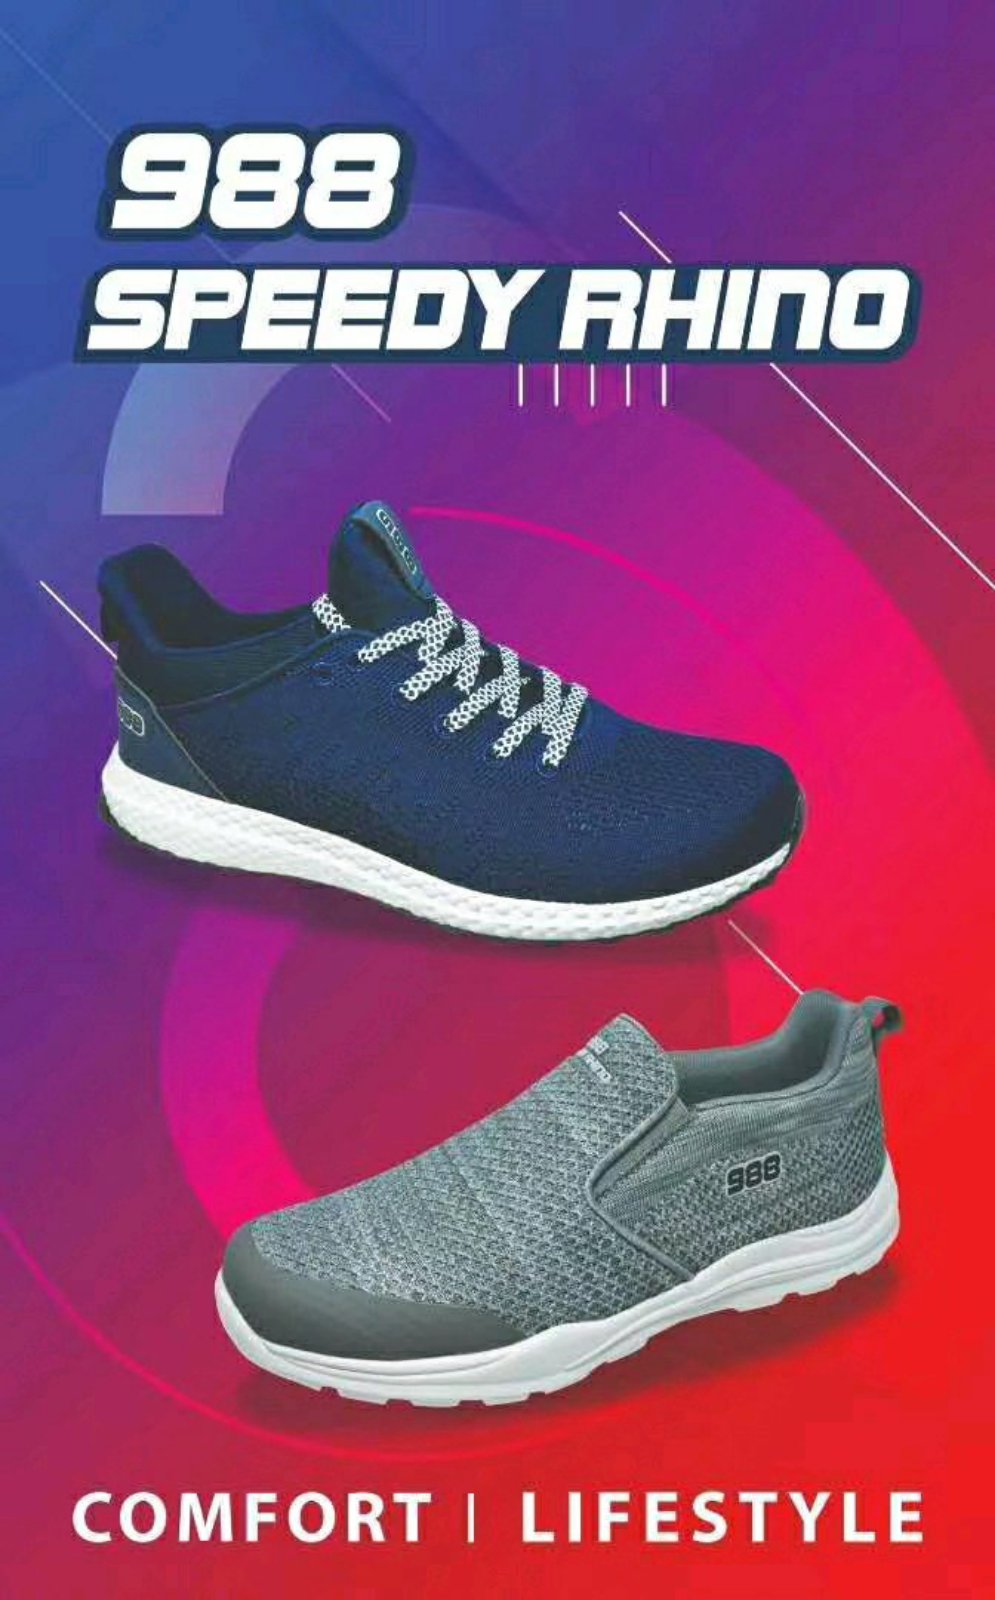 speedy rhino shoes